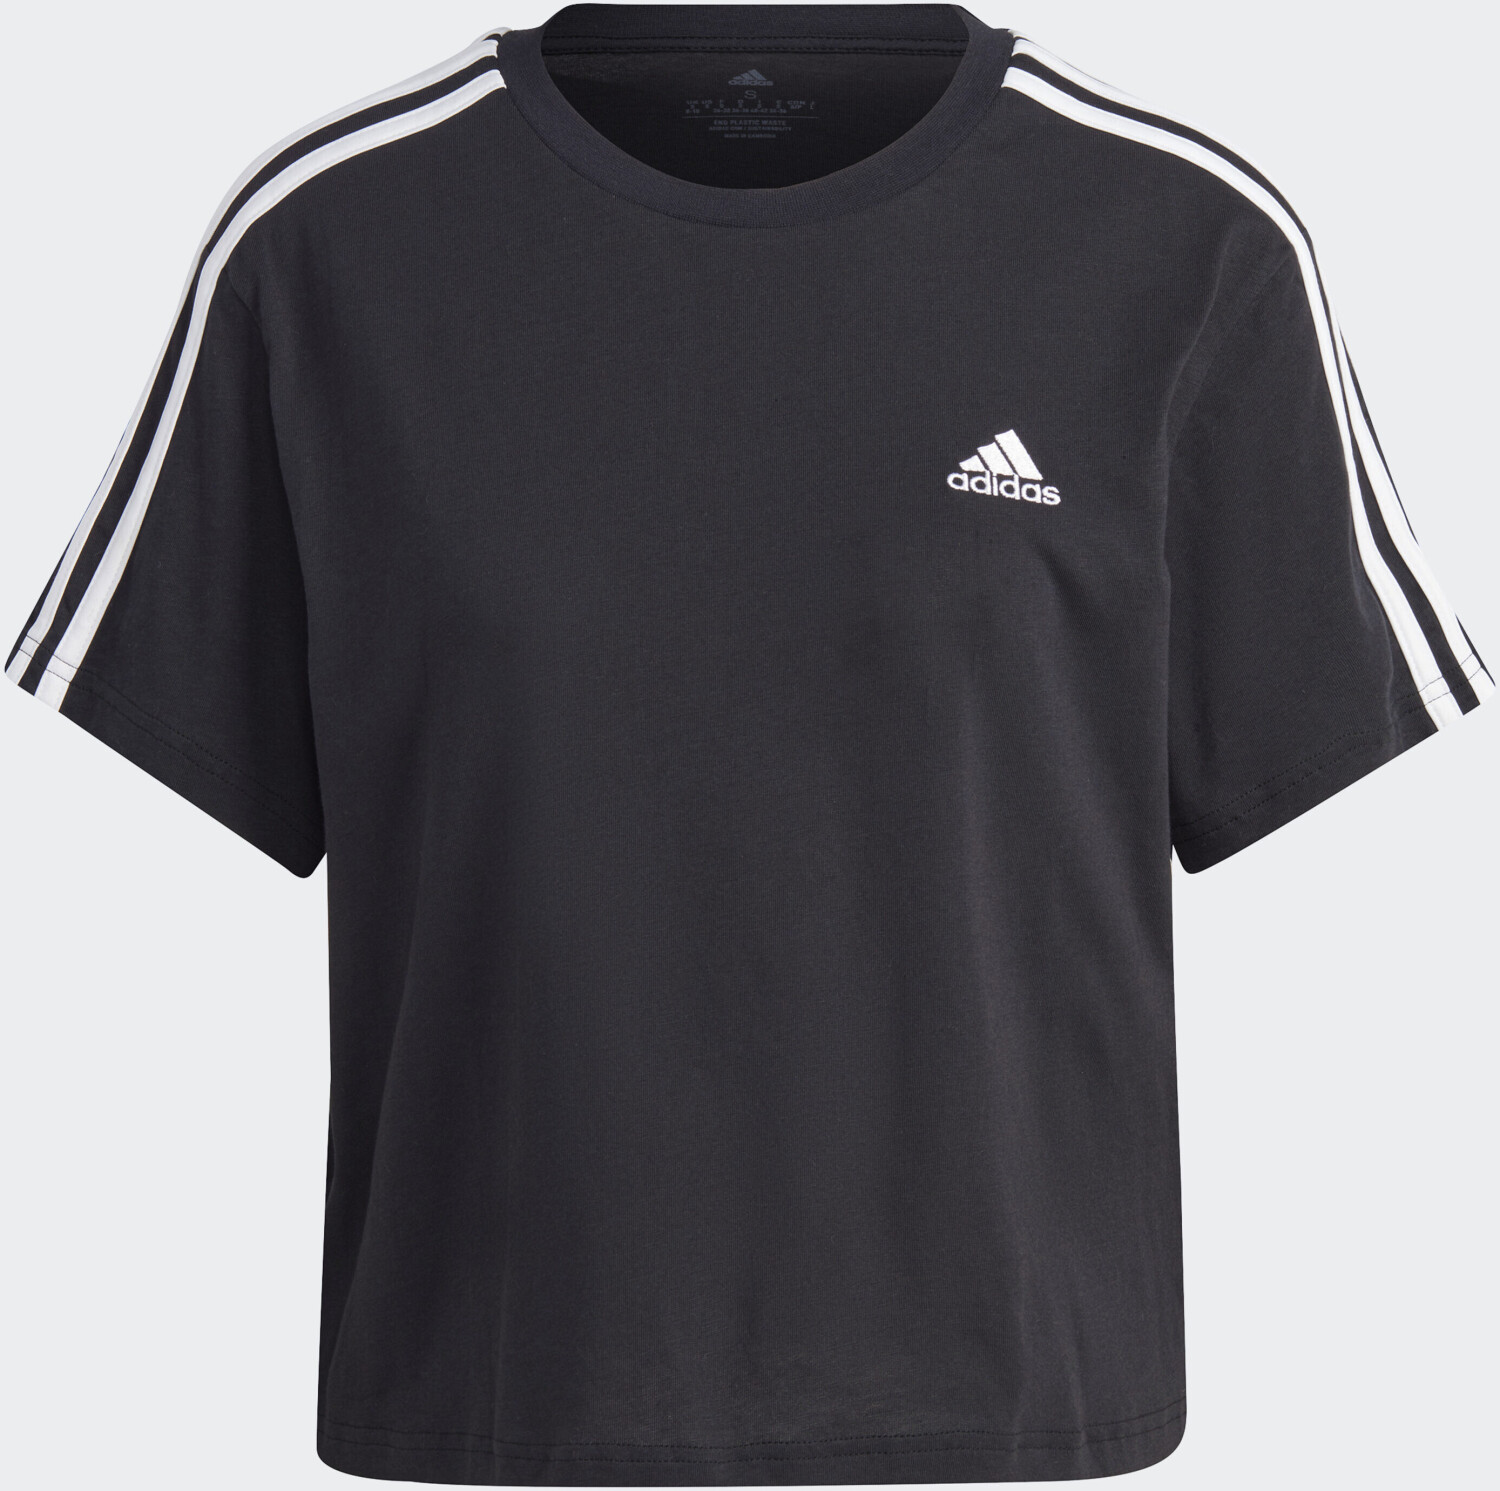 Adidas Essentials 3-Streifen Jersey € / bei Crop-Top 17,60 | white Single ab Preisvergleich (HR4913) black